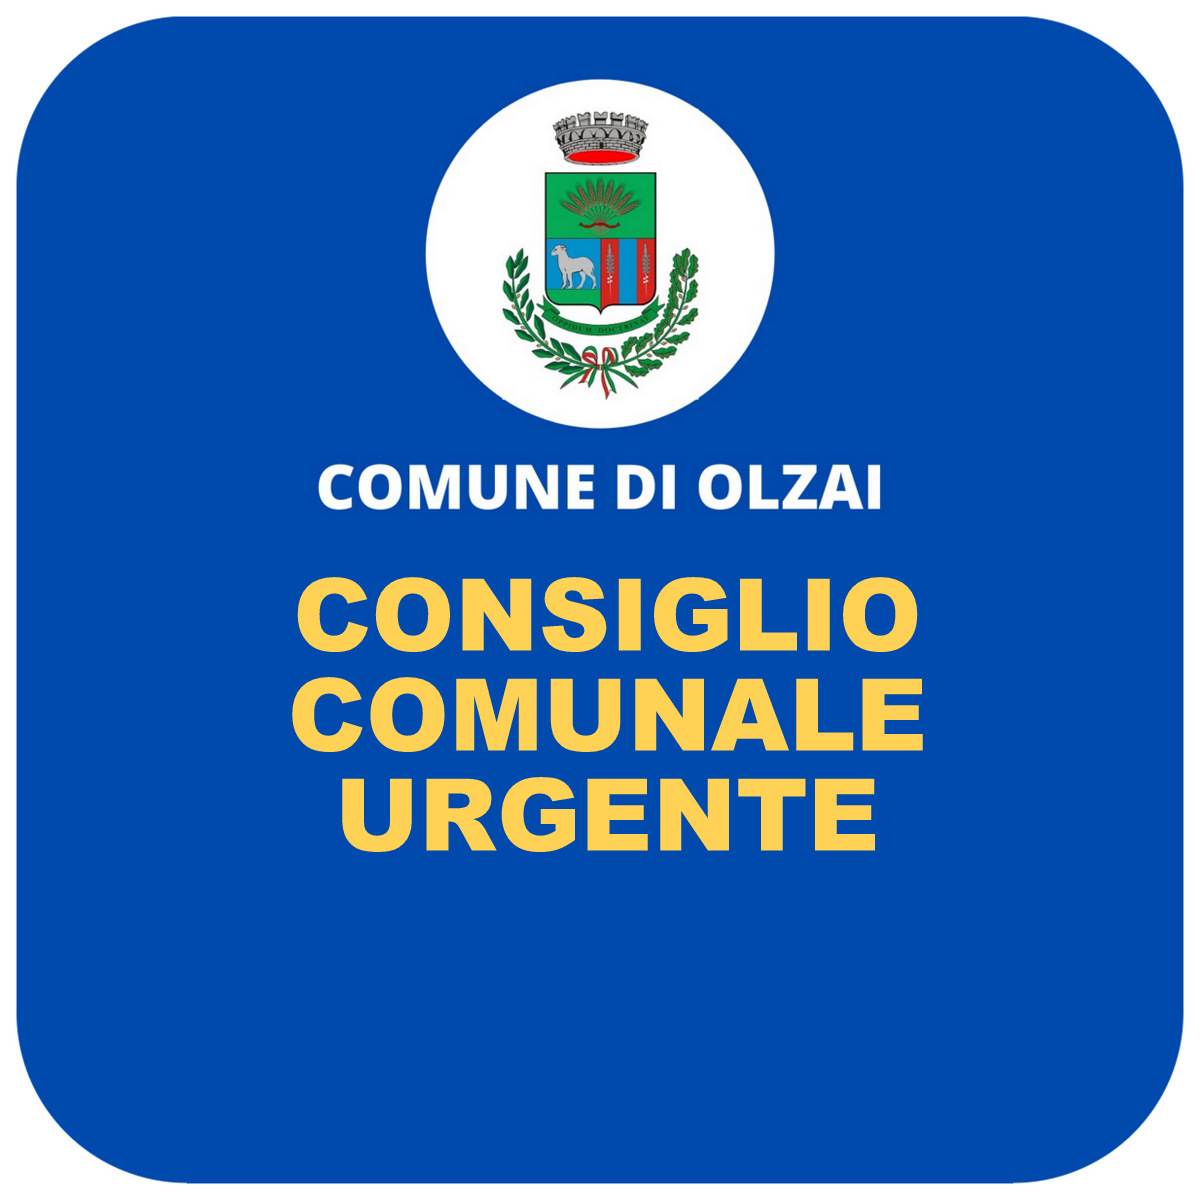 COMUNICATO DEL SINDACO: CONVOCAZIONE CONSIGLIO COMUNALE URGENTE  9/12/2021 ore 11,30